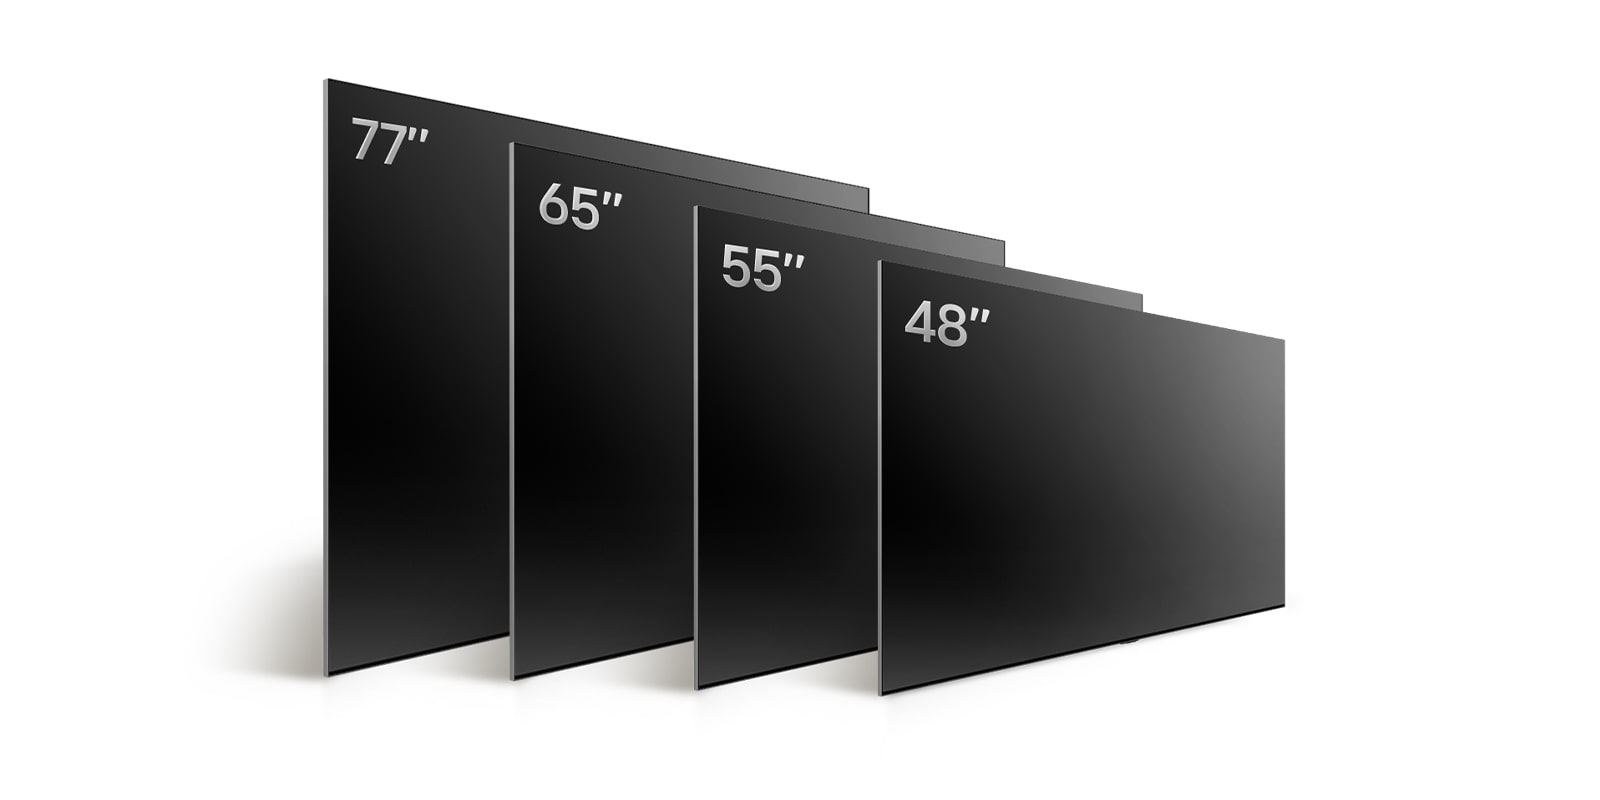 Сравнение различных размеров телевизора LG OLED TV, OLED B4, где демонстрируются телевизоры OLED B4 48", OLED B4 55", OLED B4 65", OLED B4 77".